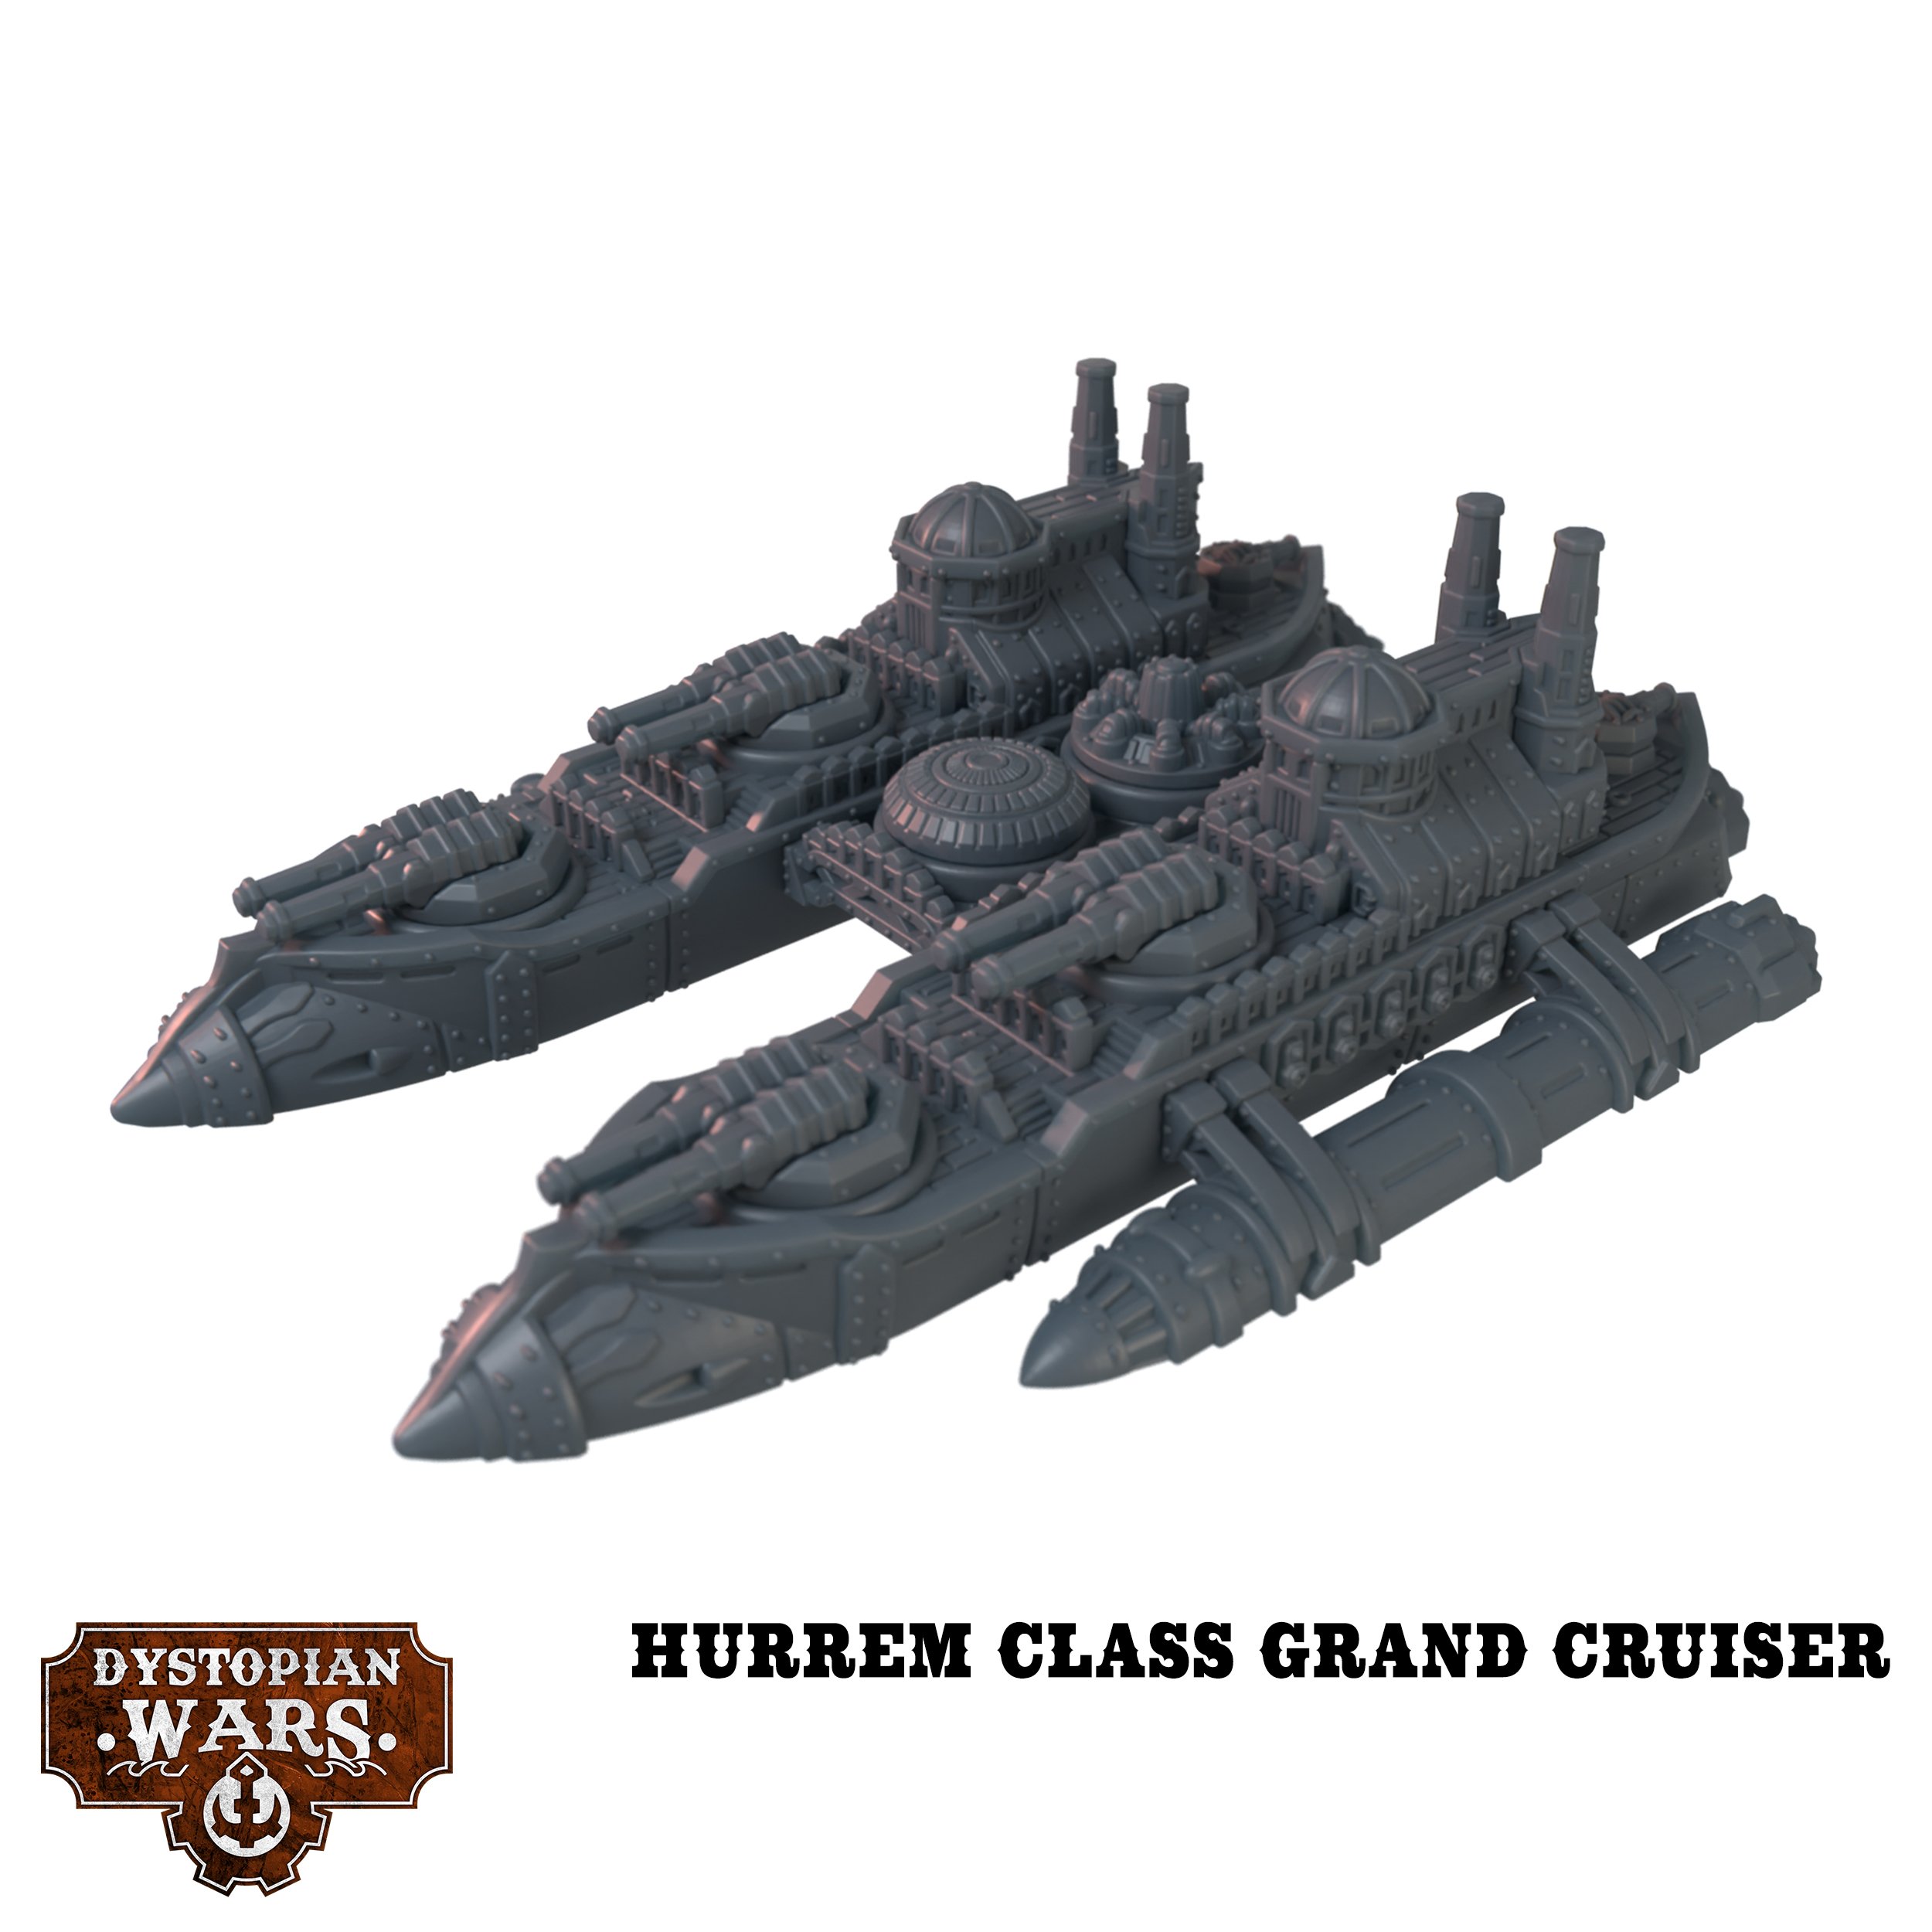 Hurrem Class Grand Cruiser - Dystopian Wars